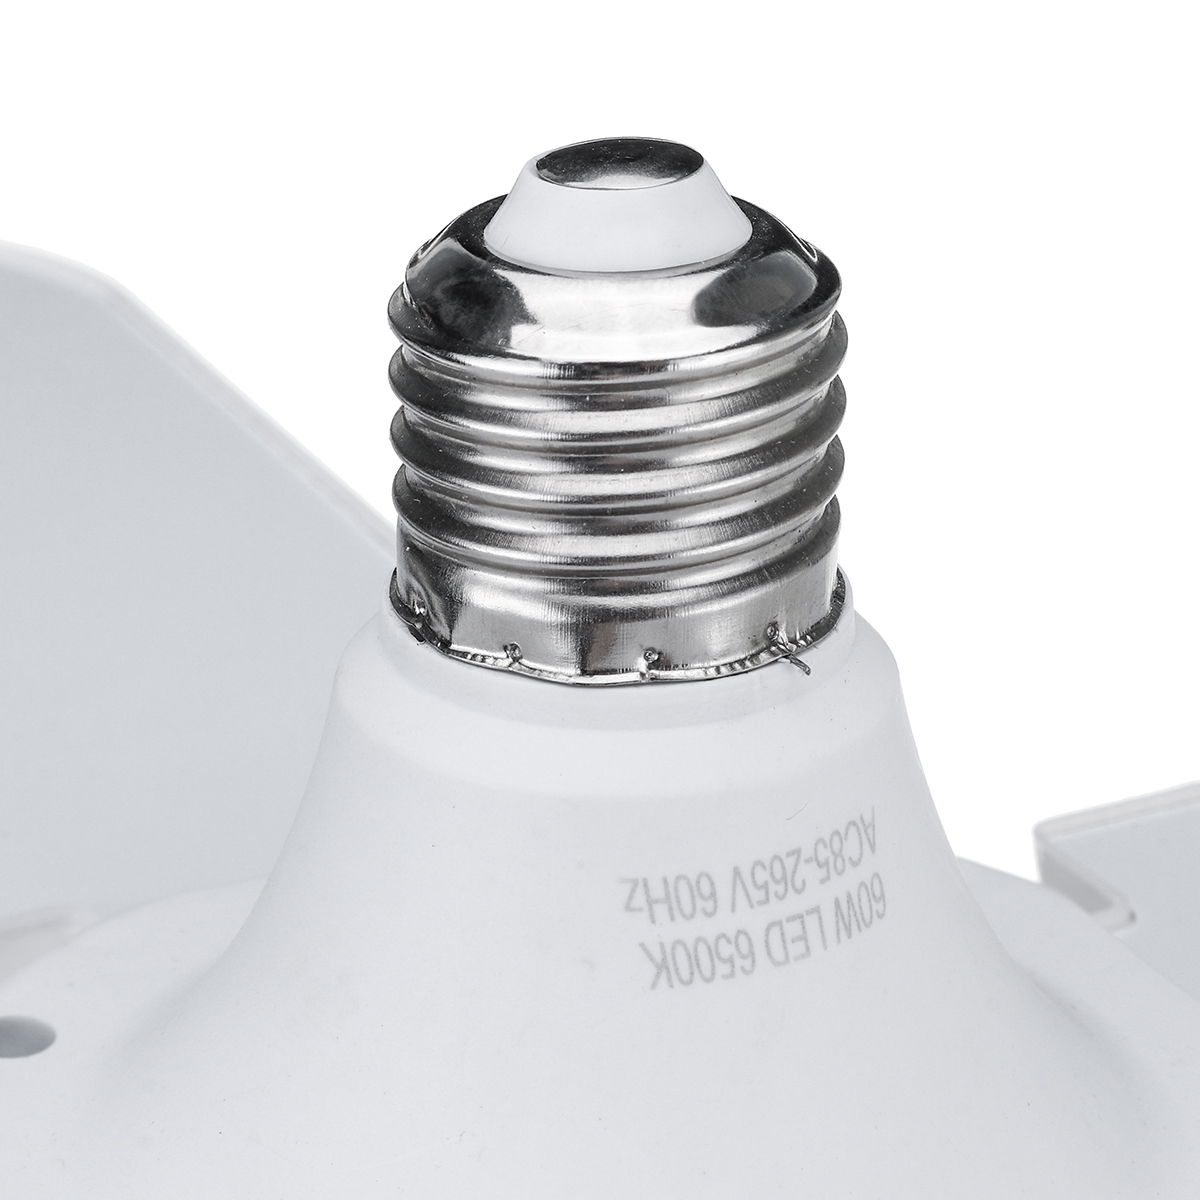 60W-E27-4800LM-LED-Garage-Light-Bulb-Deformable-Ceiling-Fixture-Workshop-Lamp-AC85-265V-AC165-265V-1634710-3